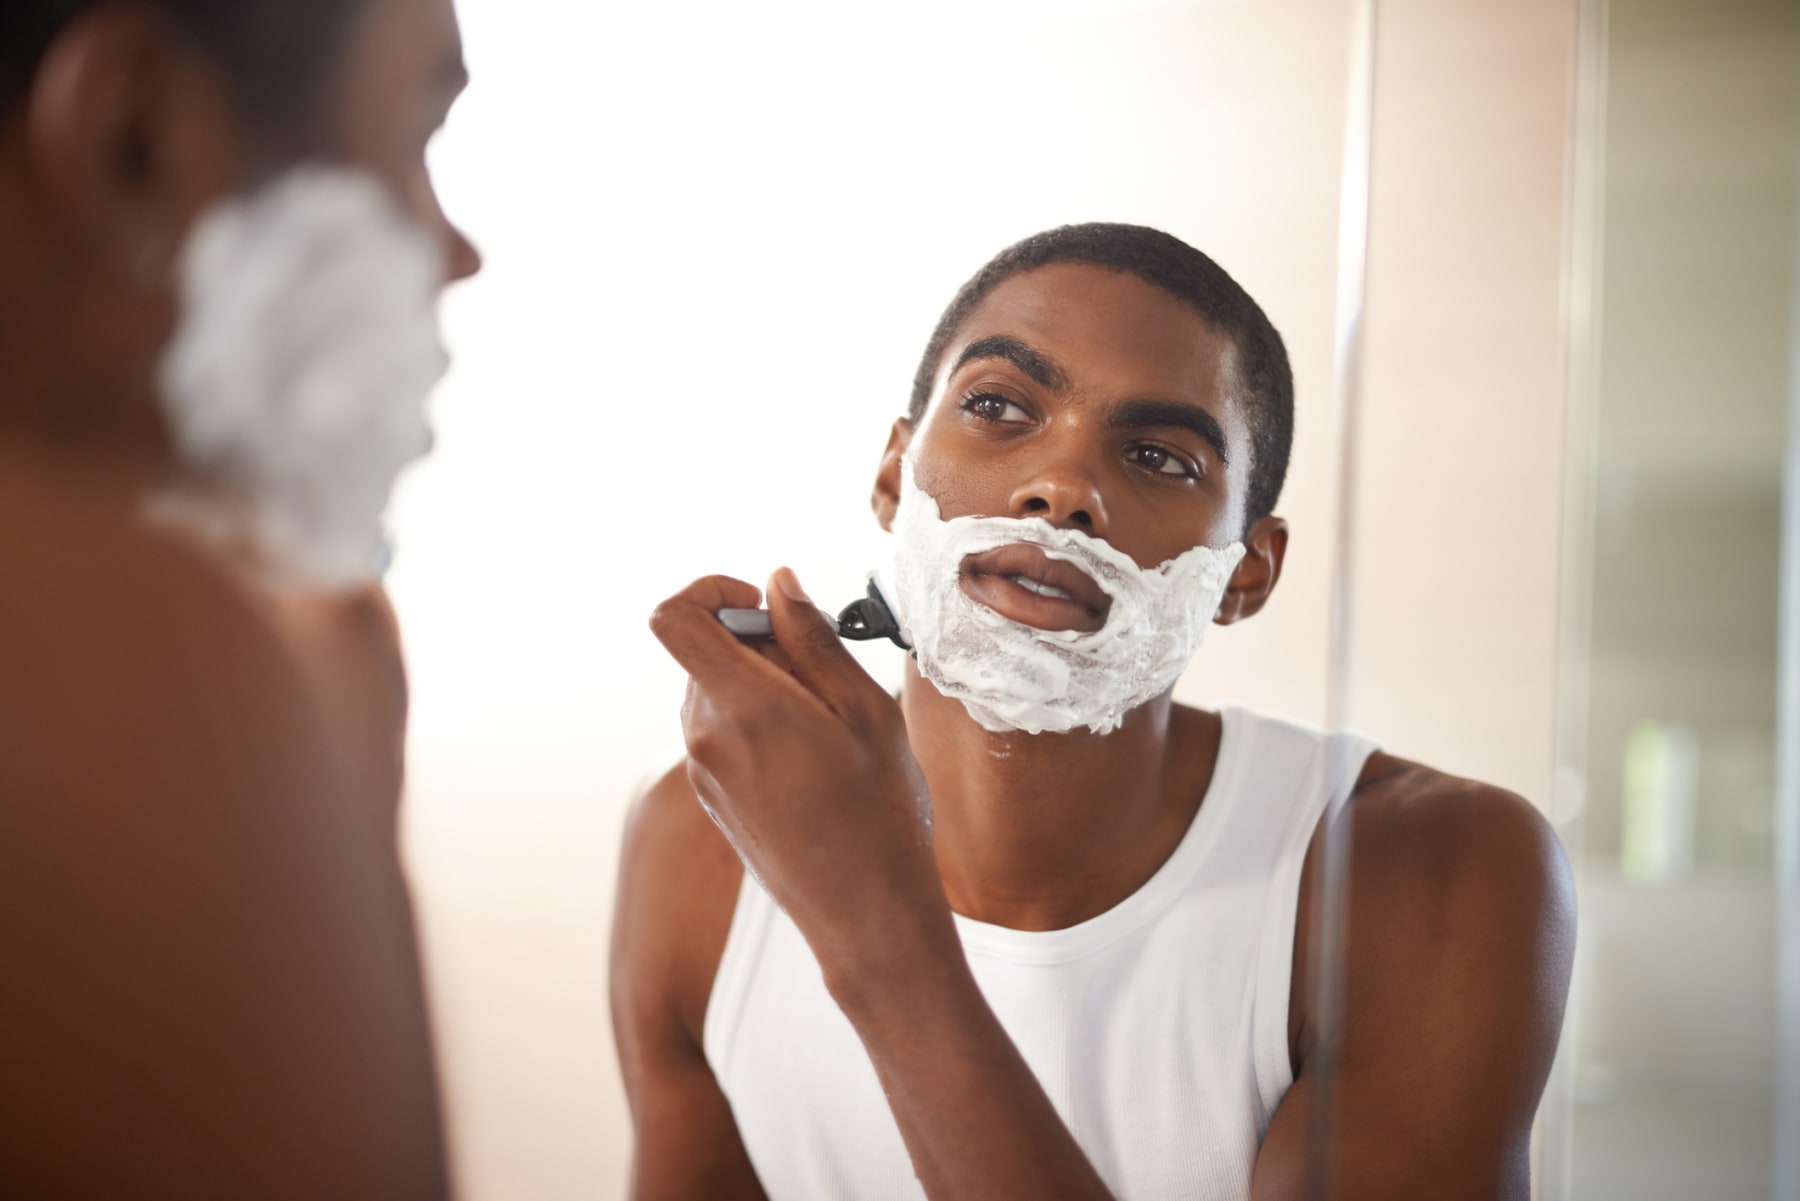 ShaveMOB Men's 6 Blade Razors - Buy Shaving Razors Online